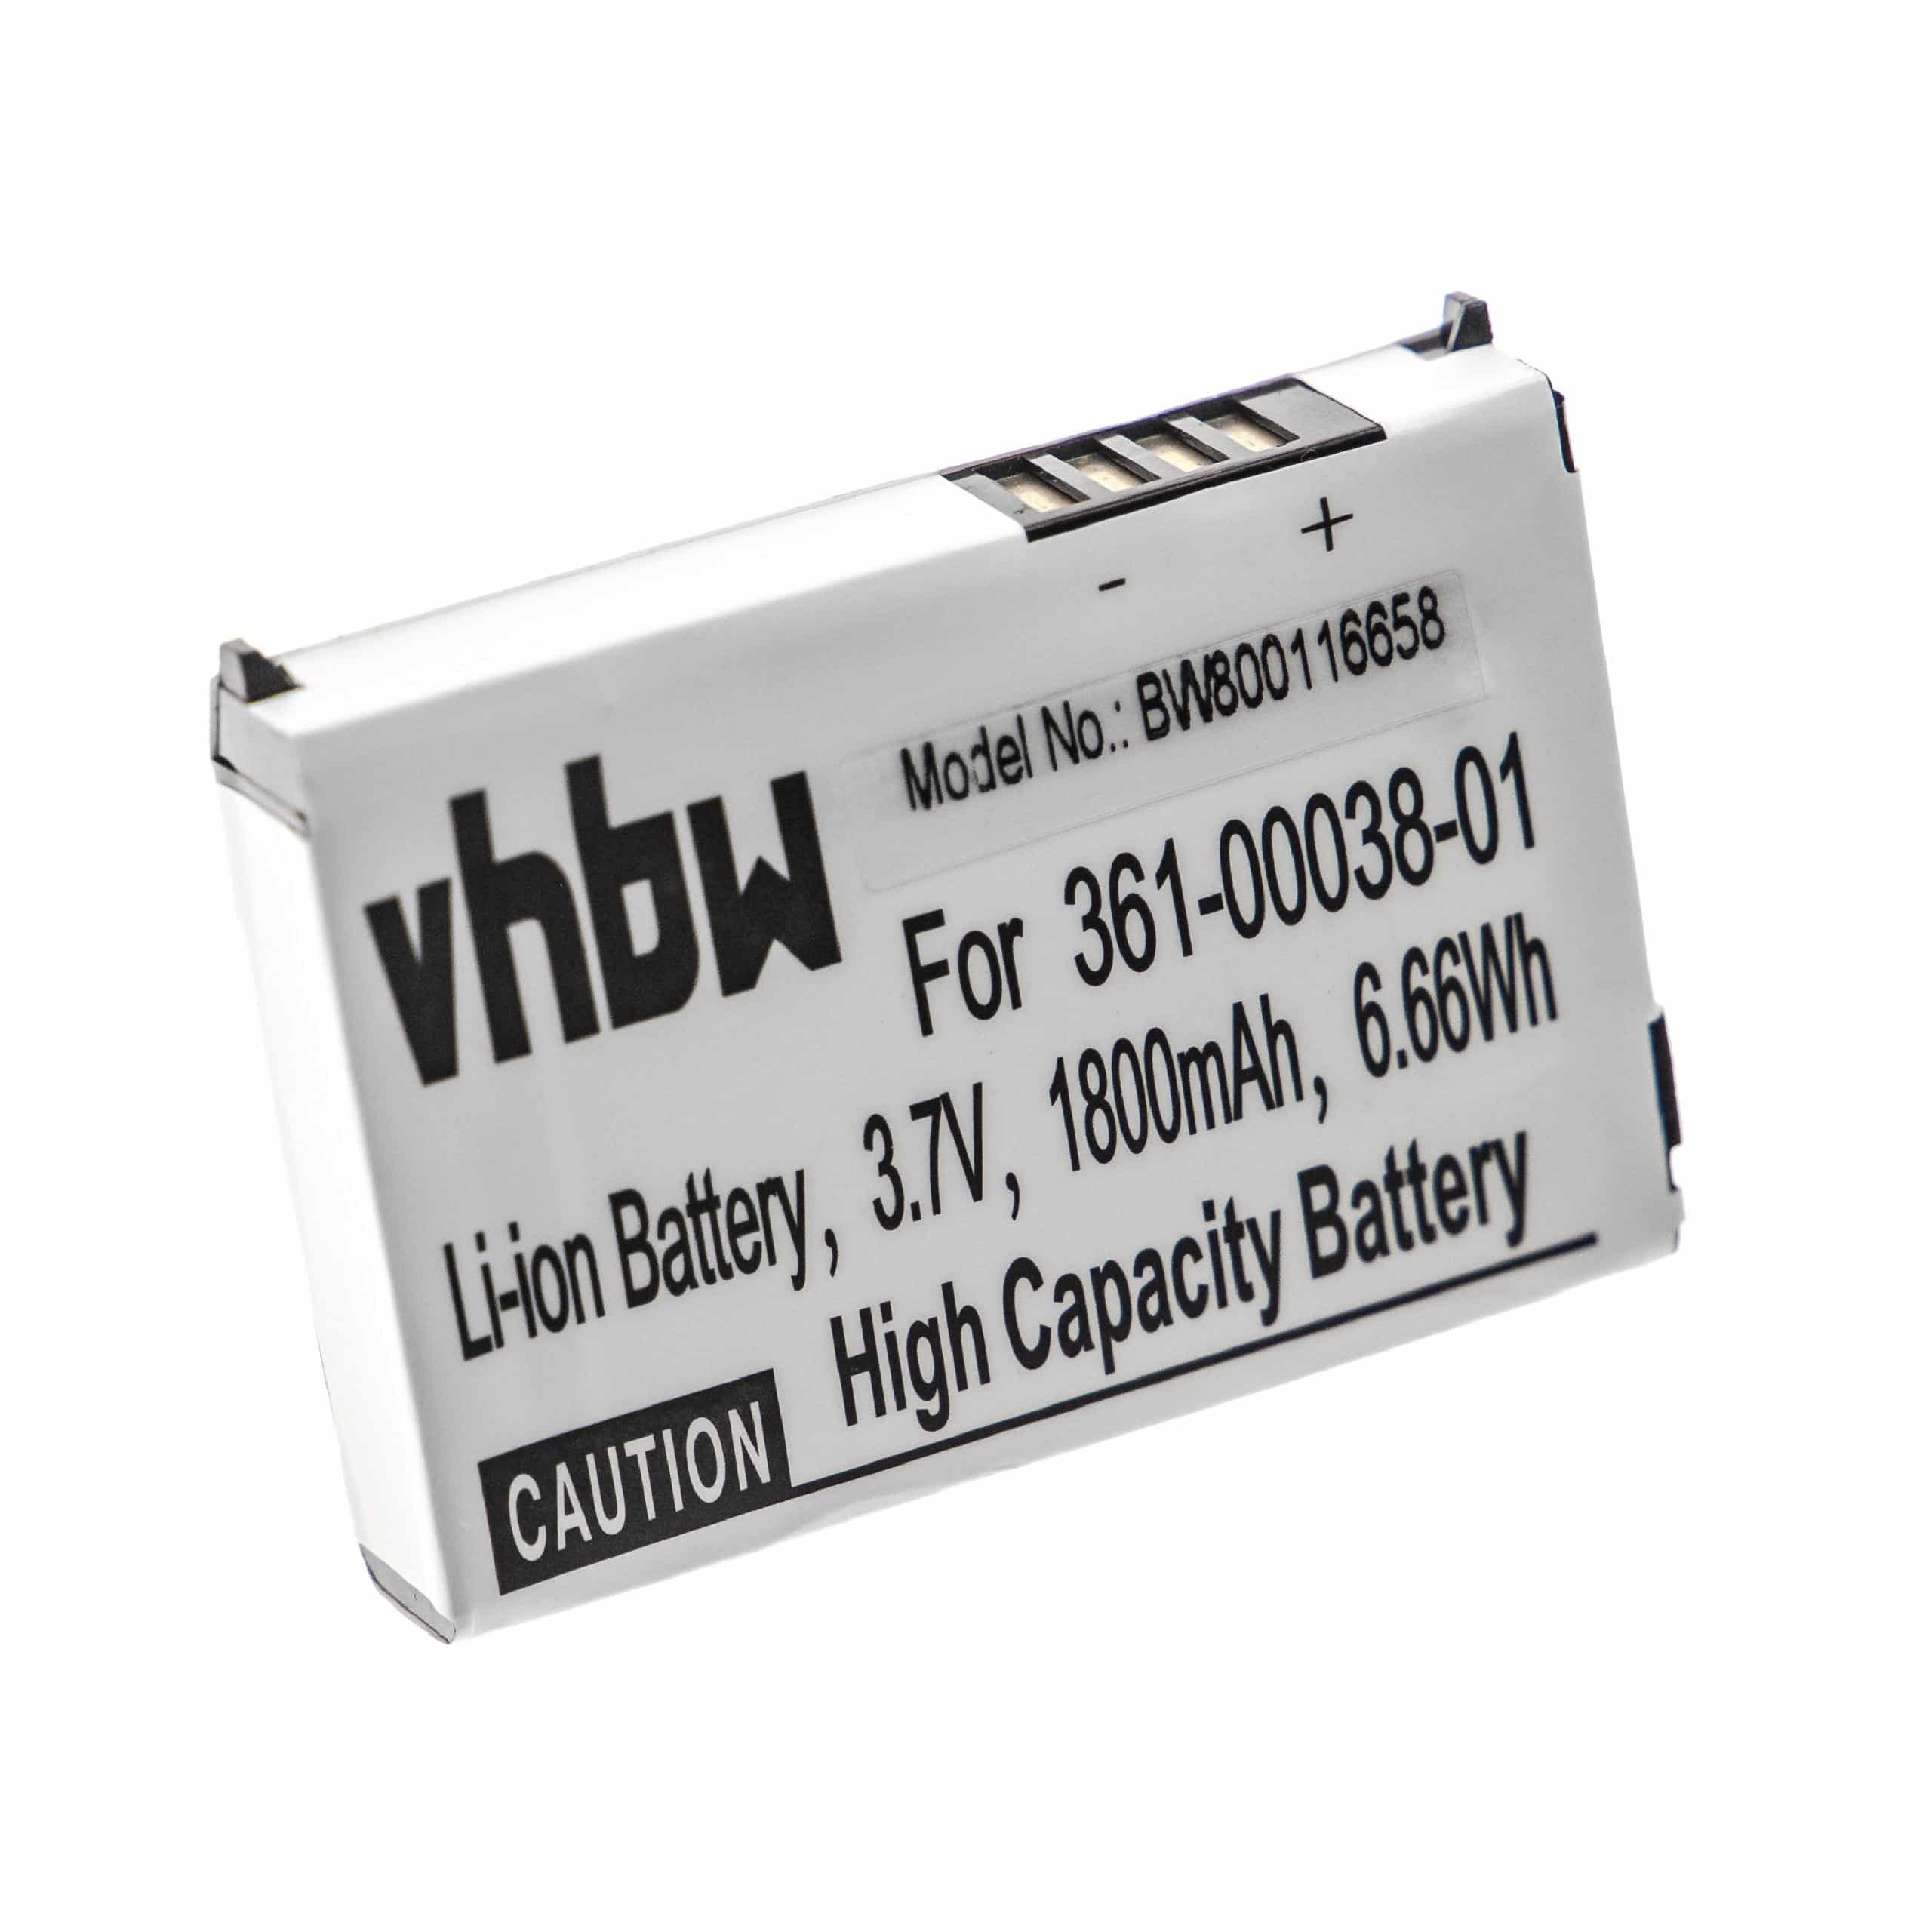 Batteria sostituisce Garmin 010-11143-00, 361-00038-01 per navigatore Garmin - 1880mAh 3,7V Li-Ion